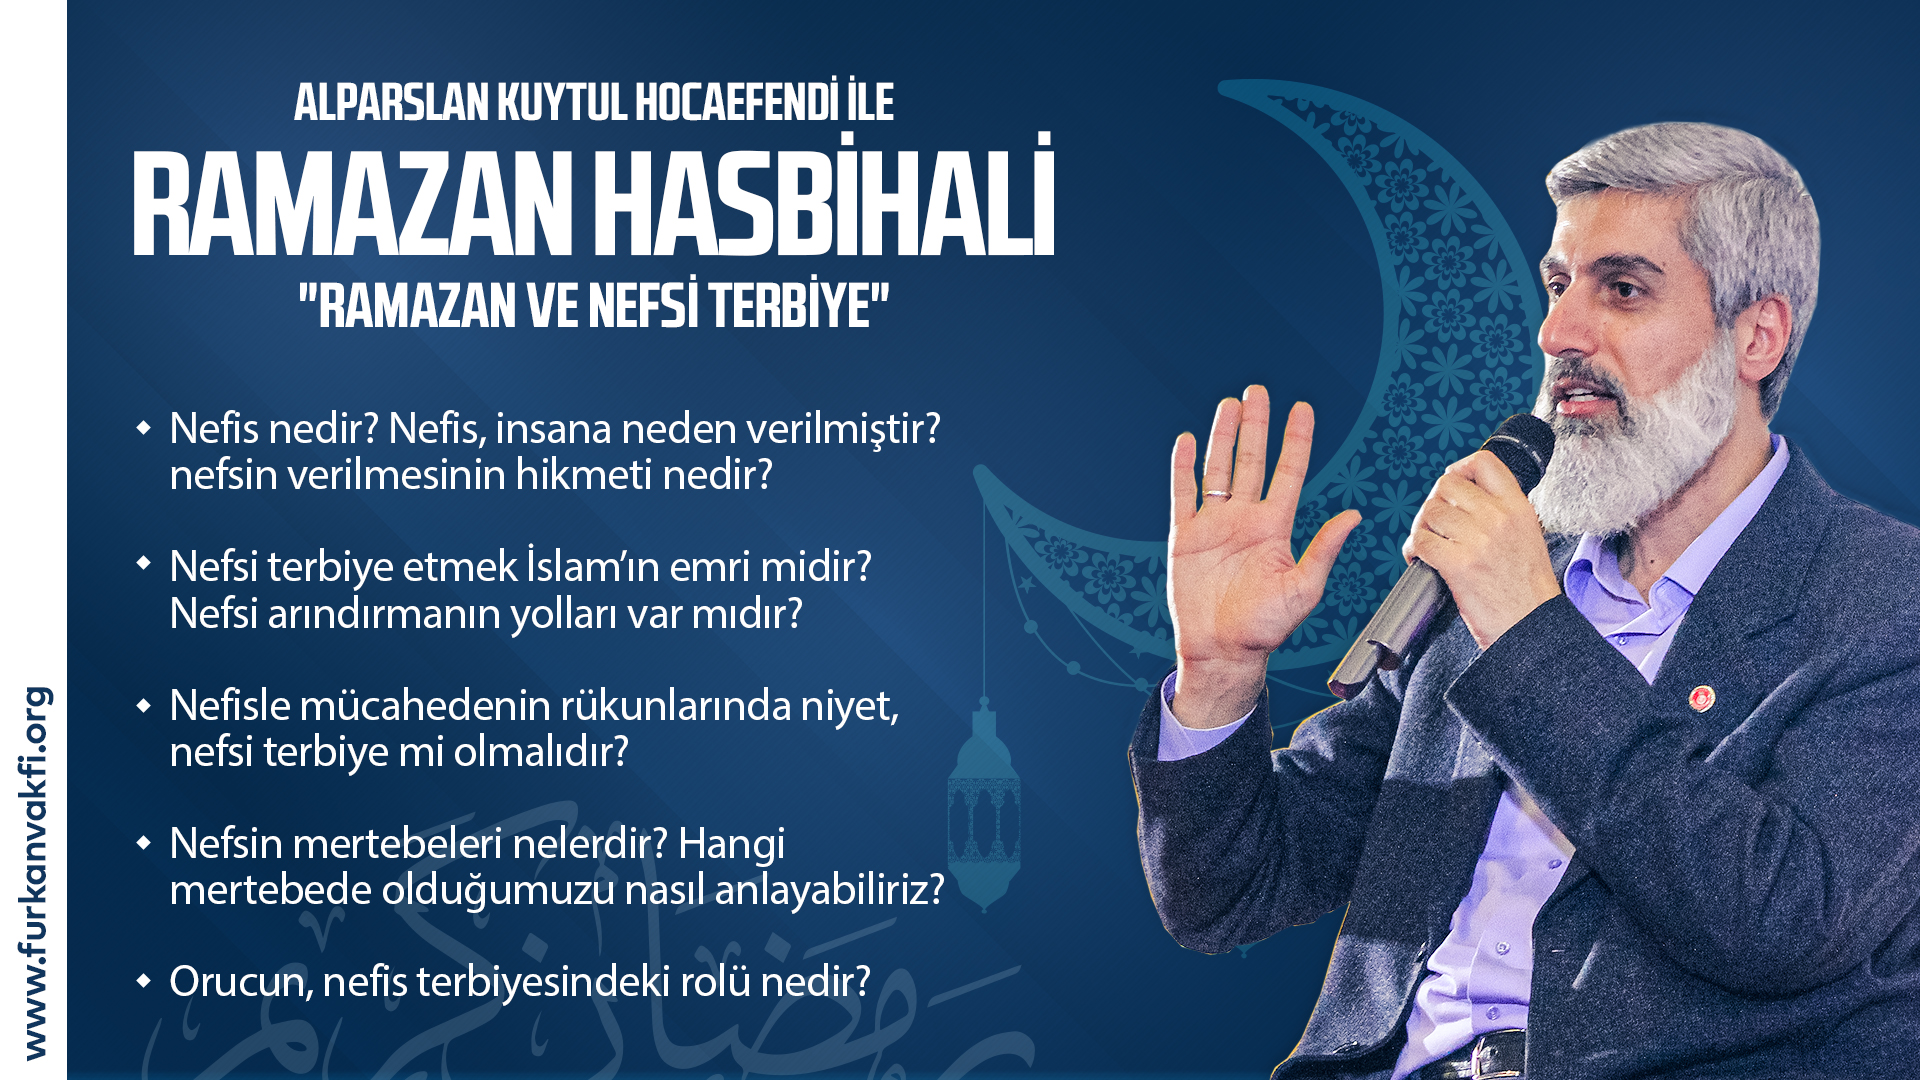 Alparslan Kuytul Hocaefendi ile "Ramazan ve Nefsi Terbiye" Konulu Hasbihal